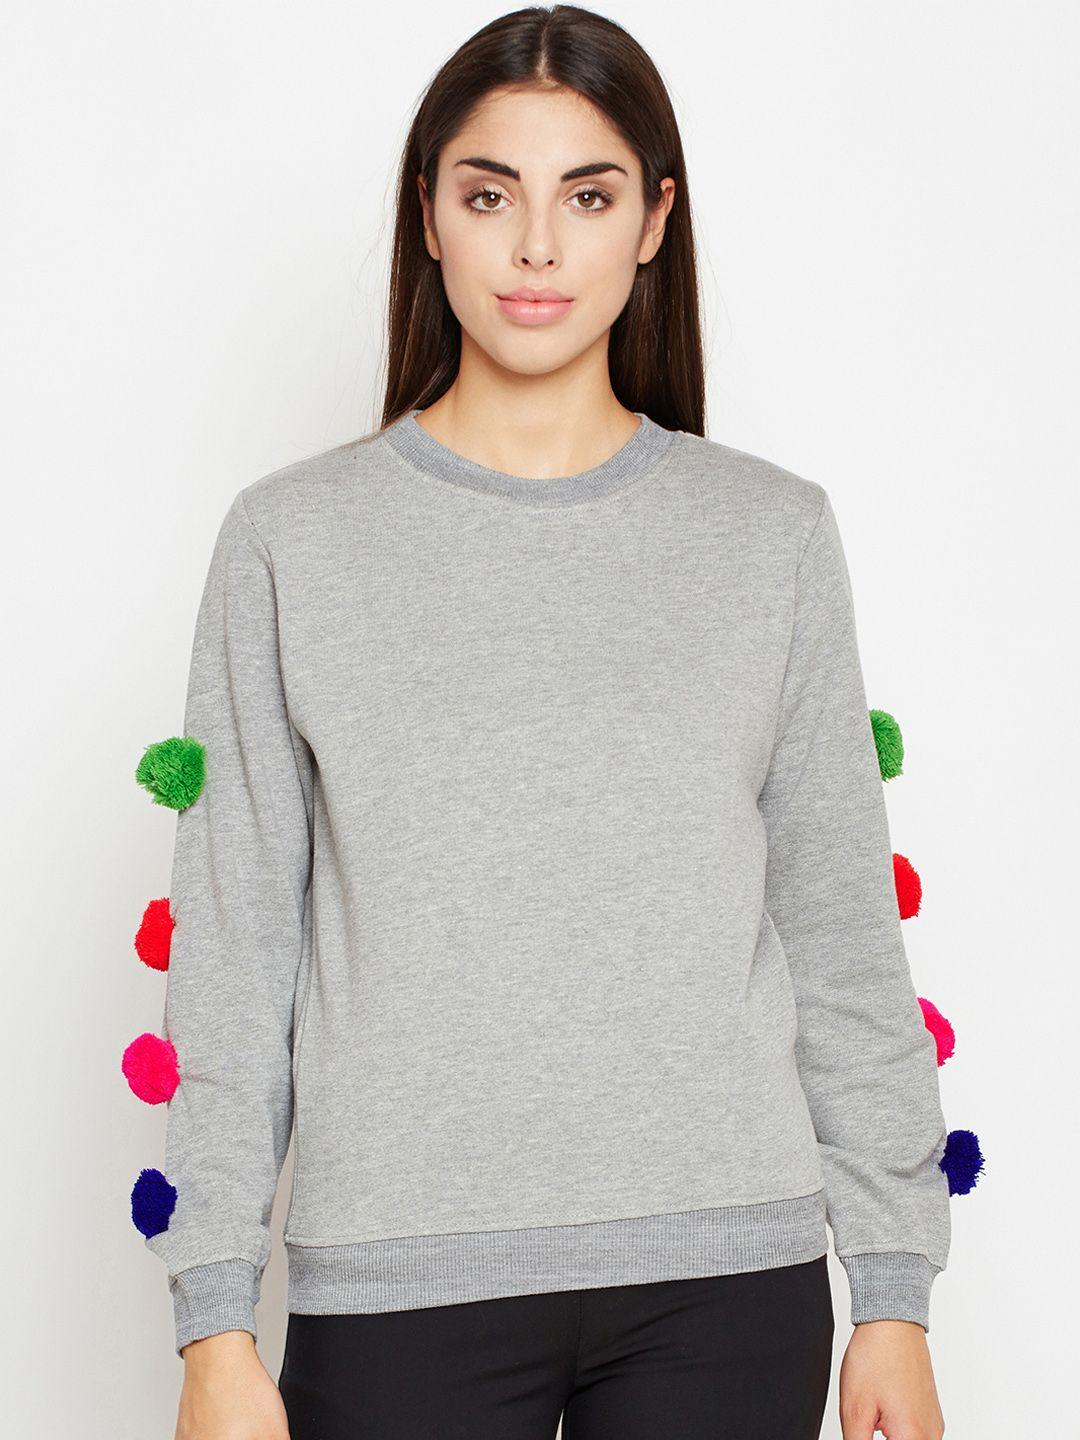 oxolloxo women grey solid sweatshirt